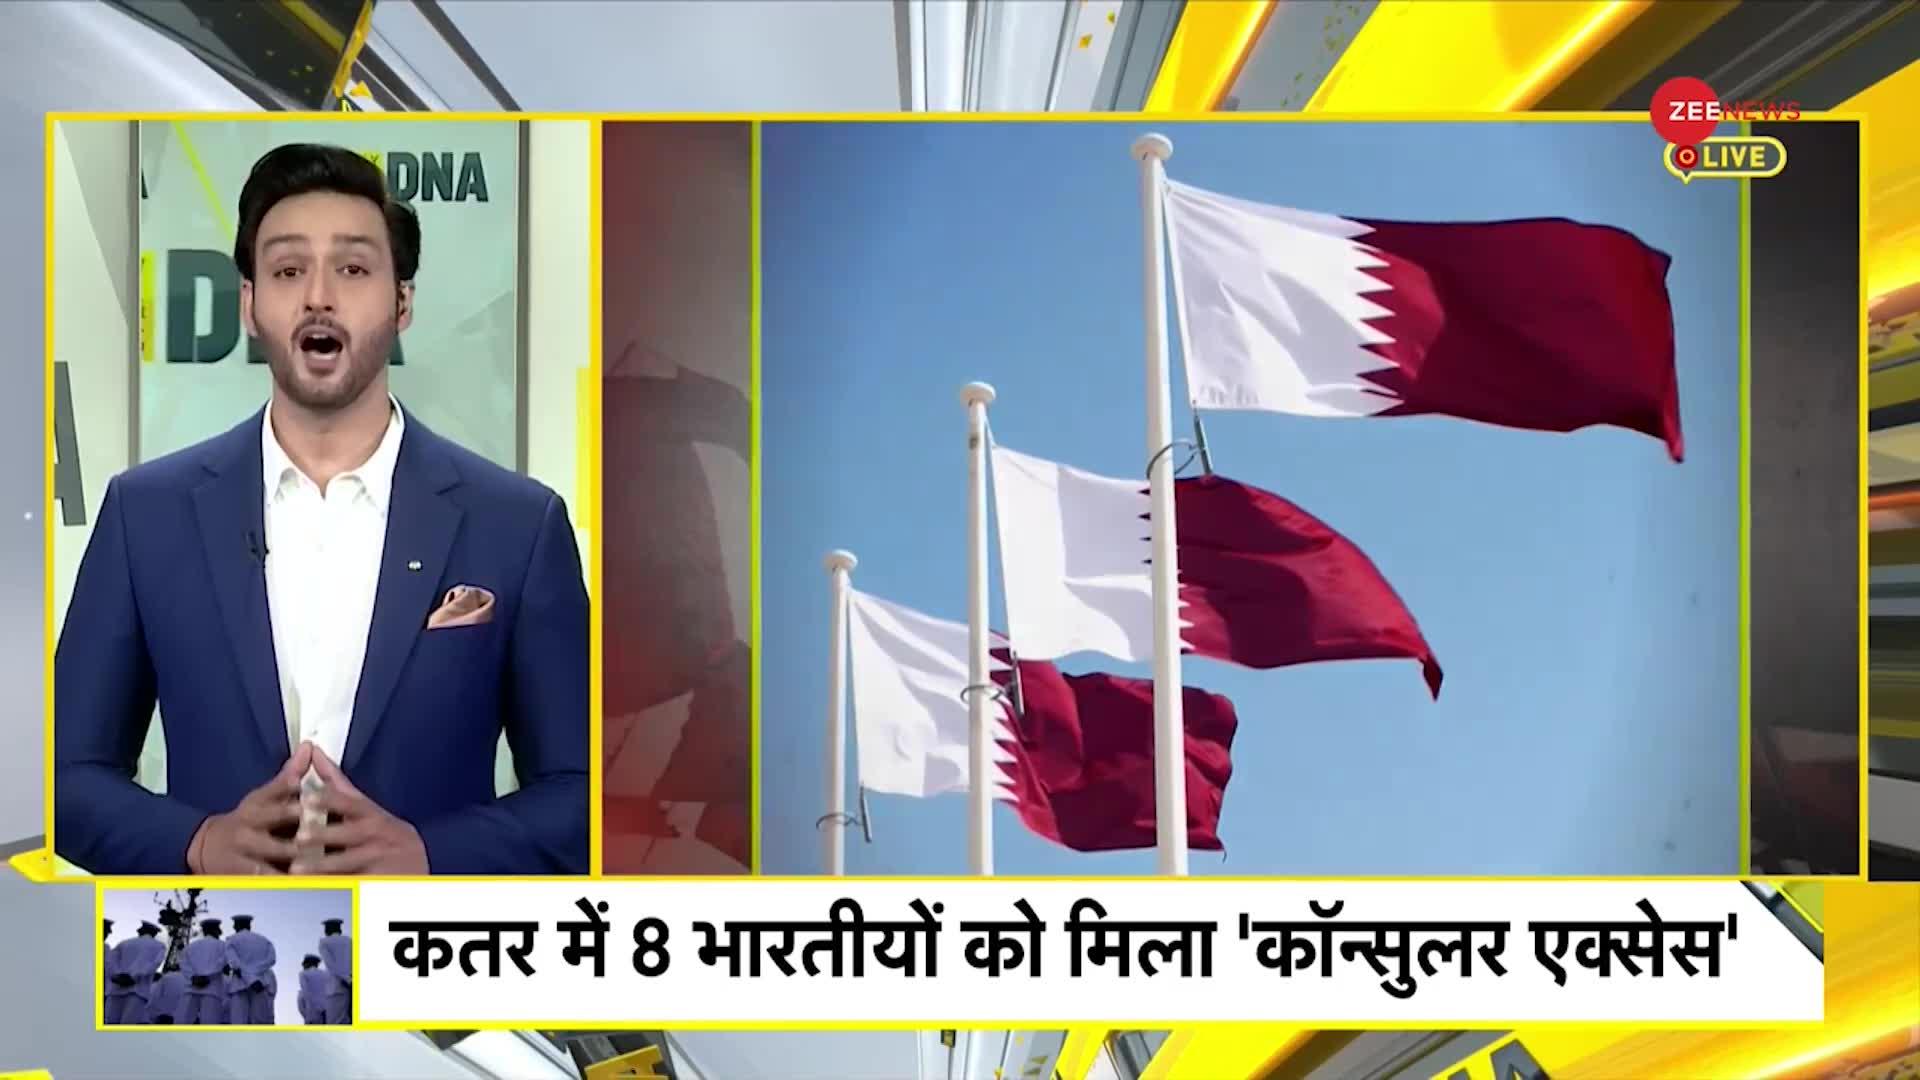 Qatar India News: कतर फांसी पर भारत की पहली जीत